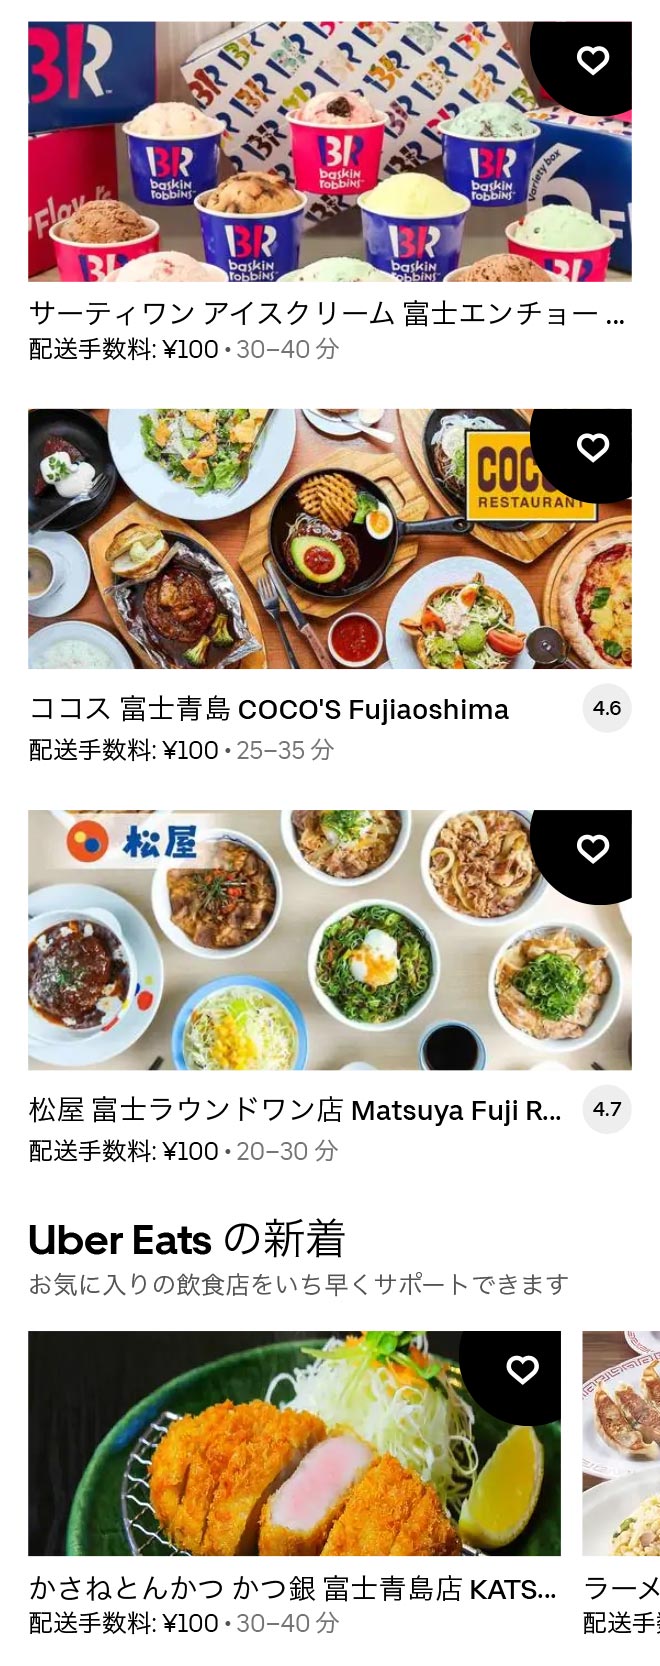 U yoshiwara menu 2104 05